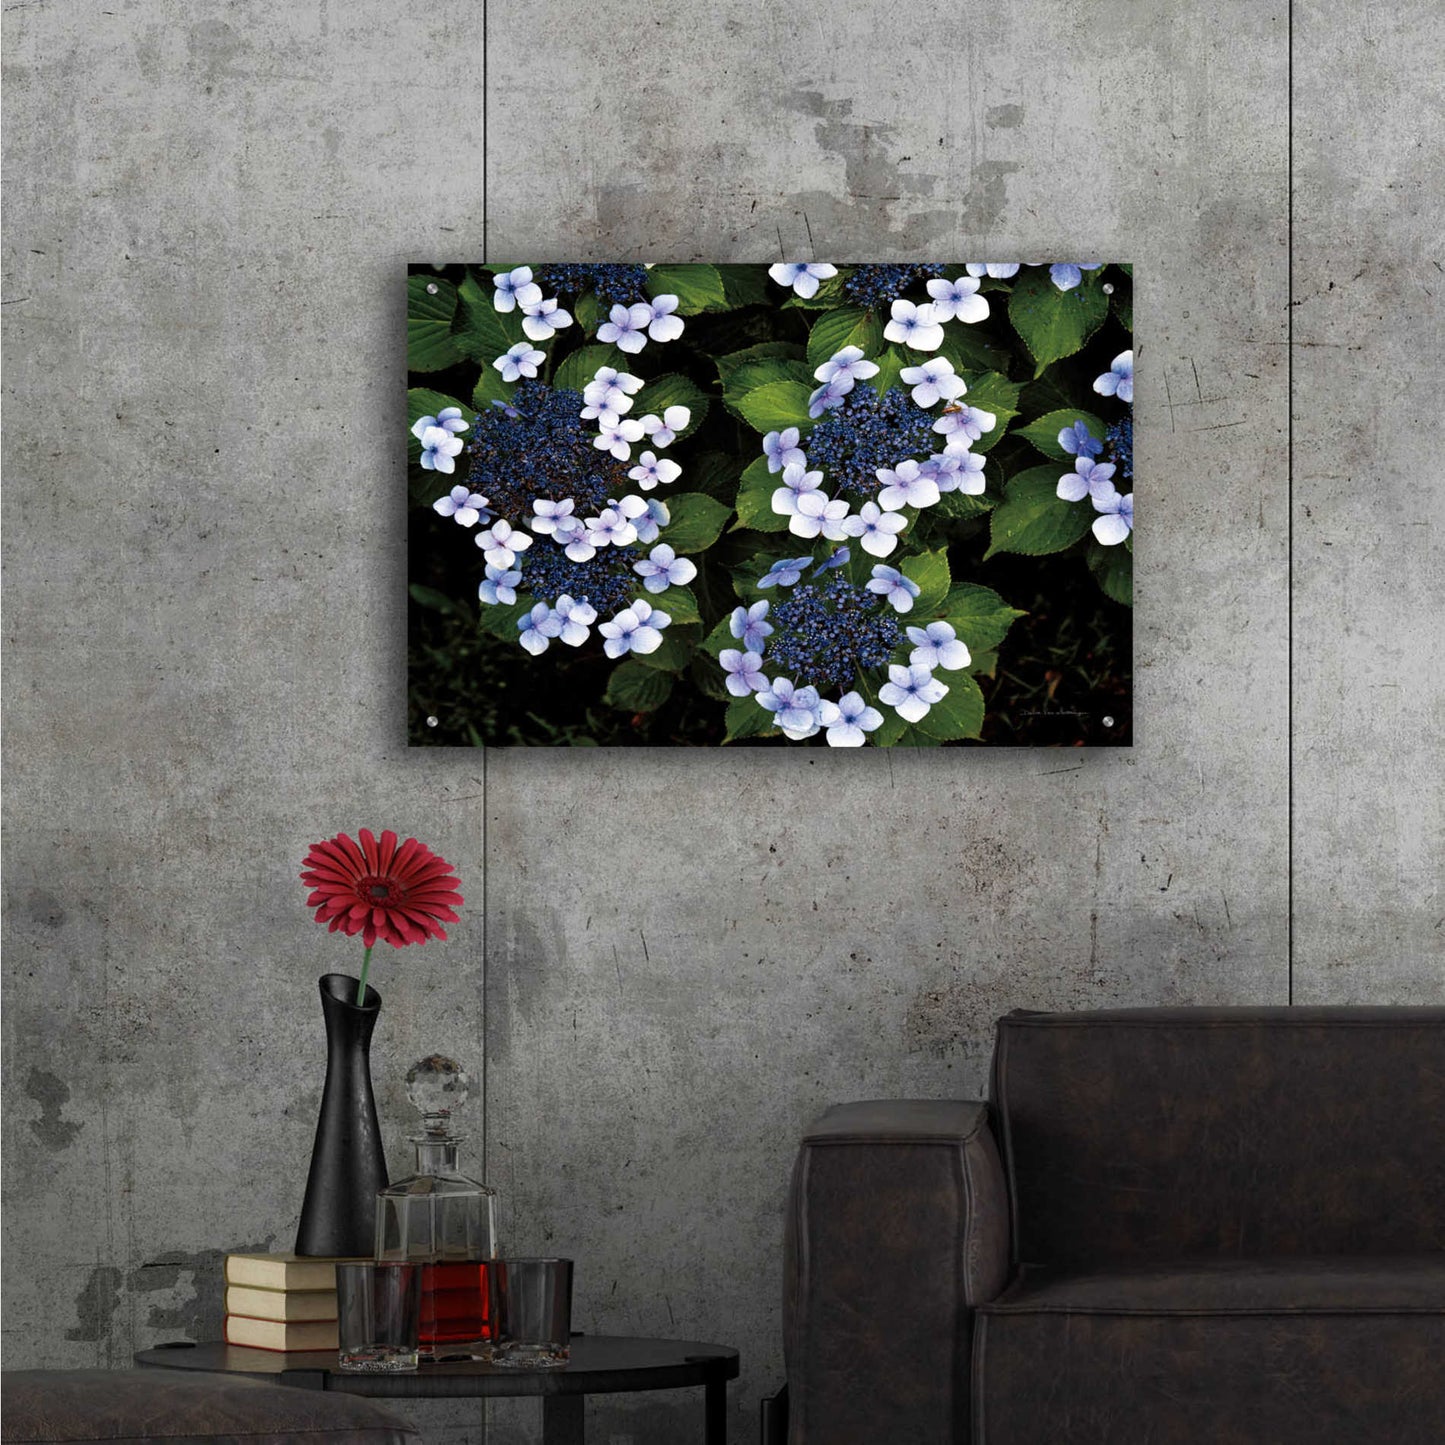 Epic Art 'Hydrangeas Opening' by Debra Van Swearingen, Acrylic Glass Wall Art,36x24